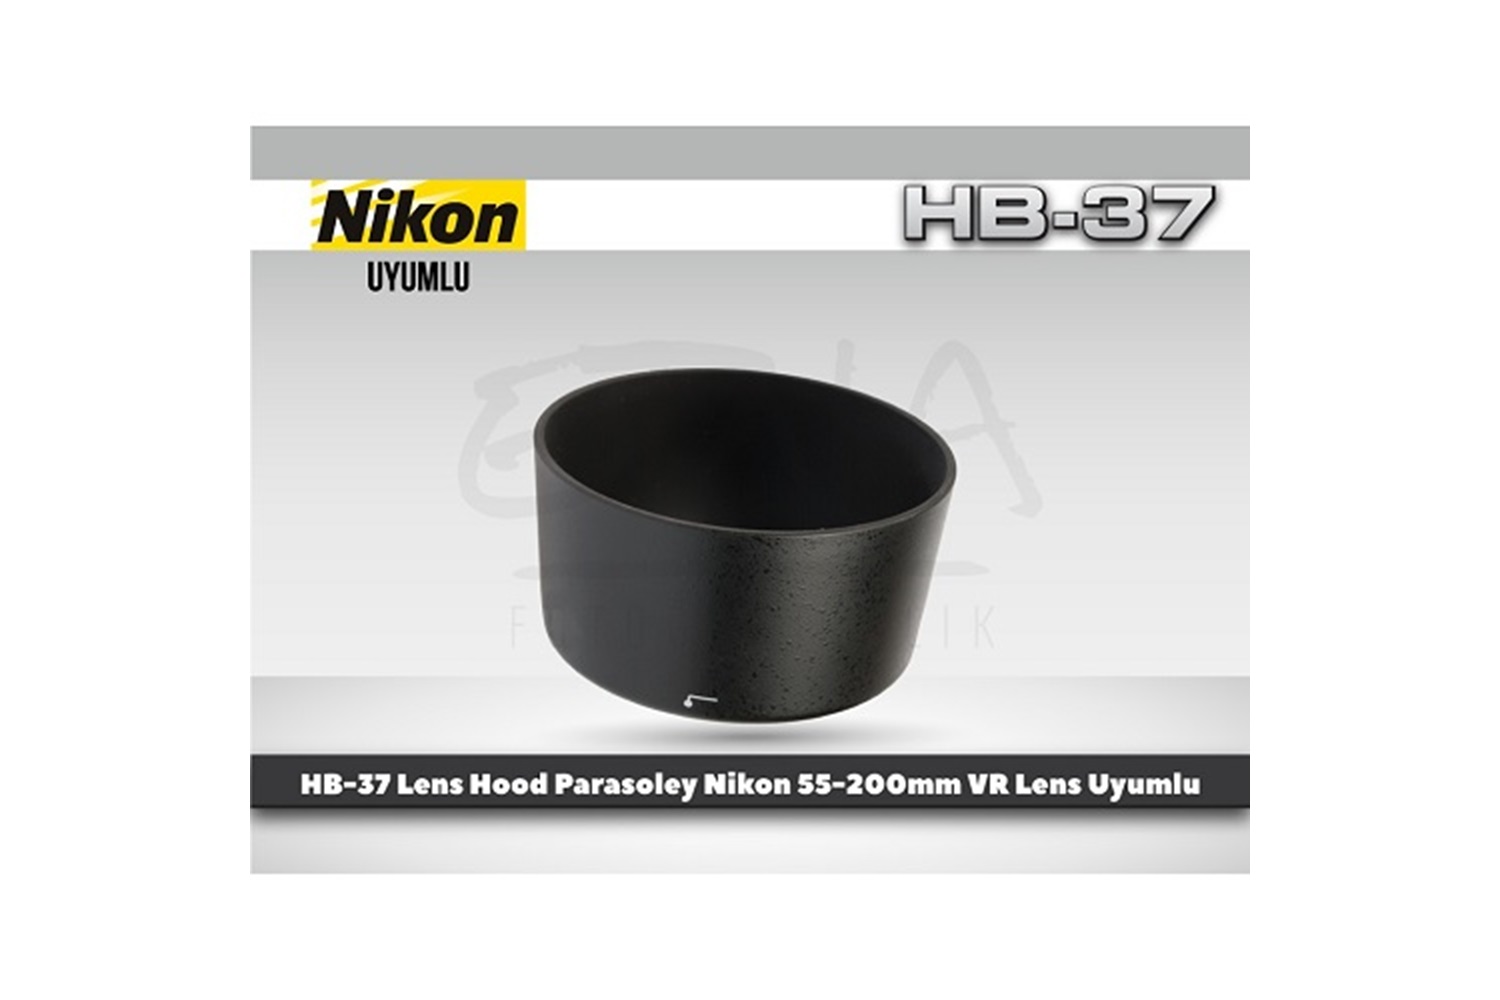 Tewise Nikon HB-37 Parasoley 55-200mm VR 85mm F3.5 Macro Lens Uyumlu